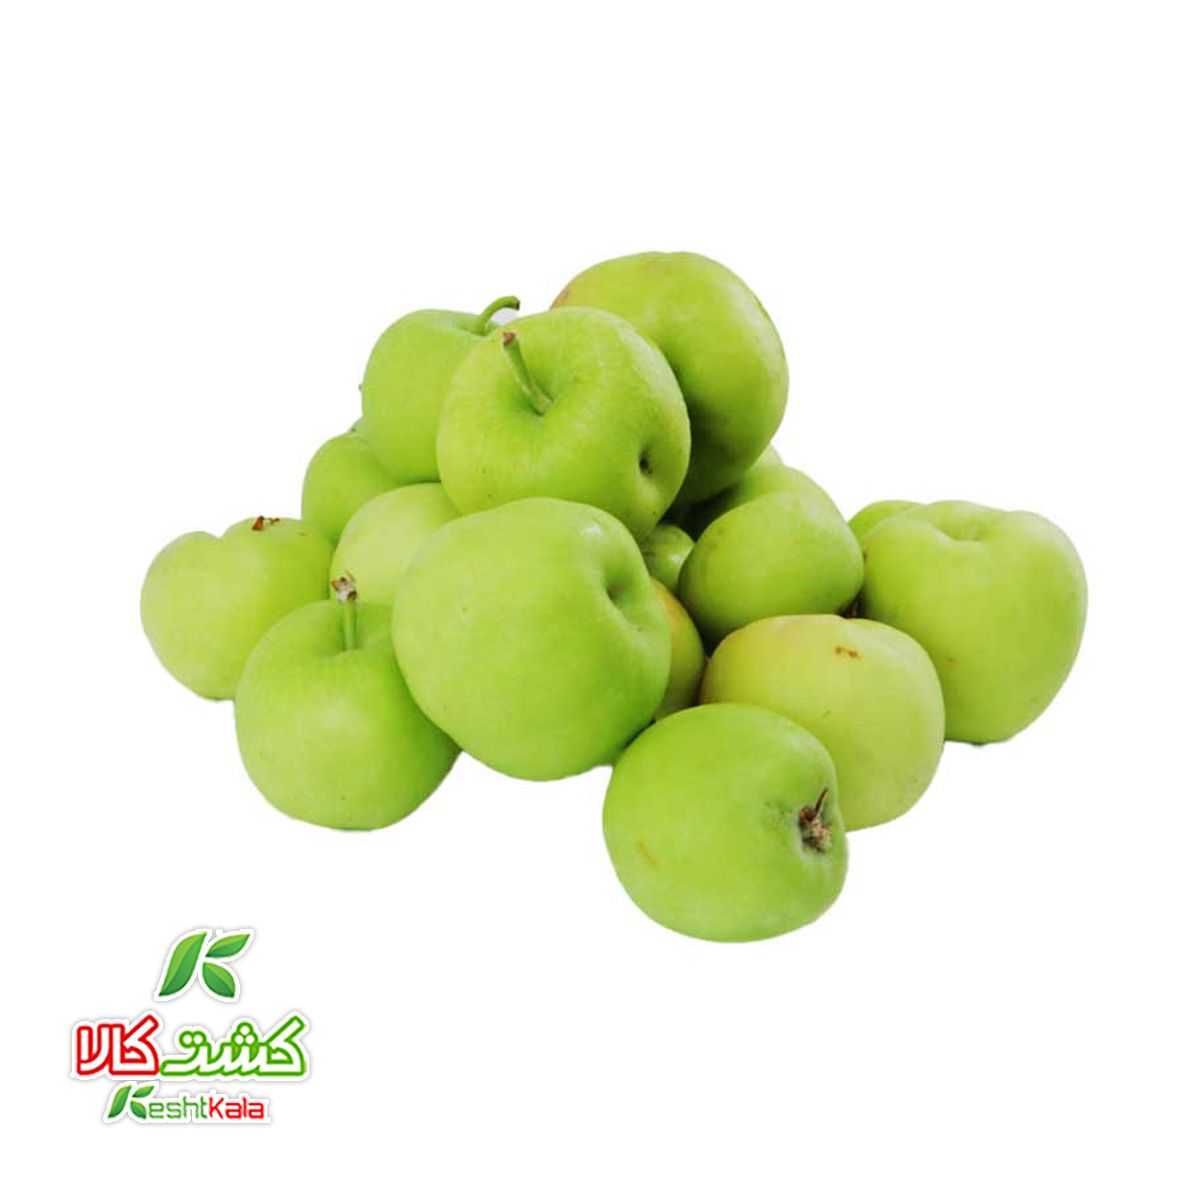 سیب سبز آبگیری کشت کالا کیسه ای 5 کیلوگرمی